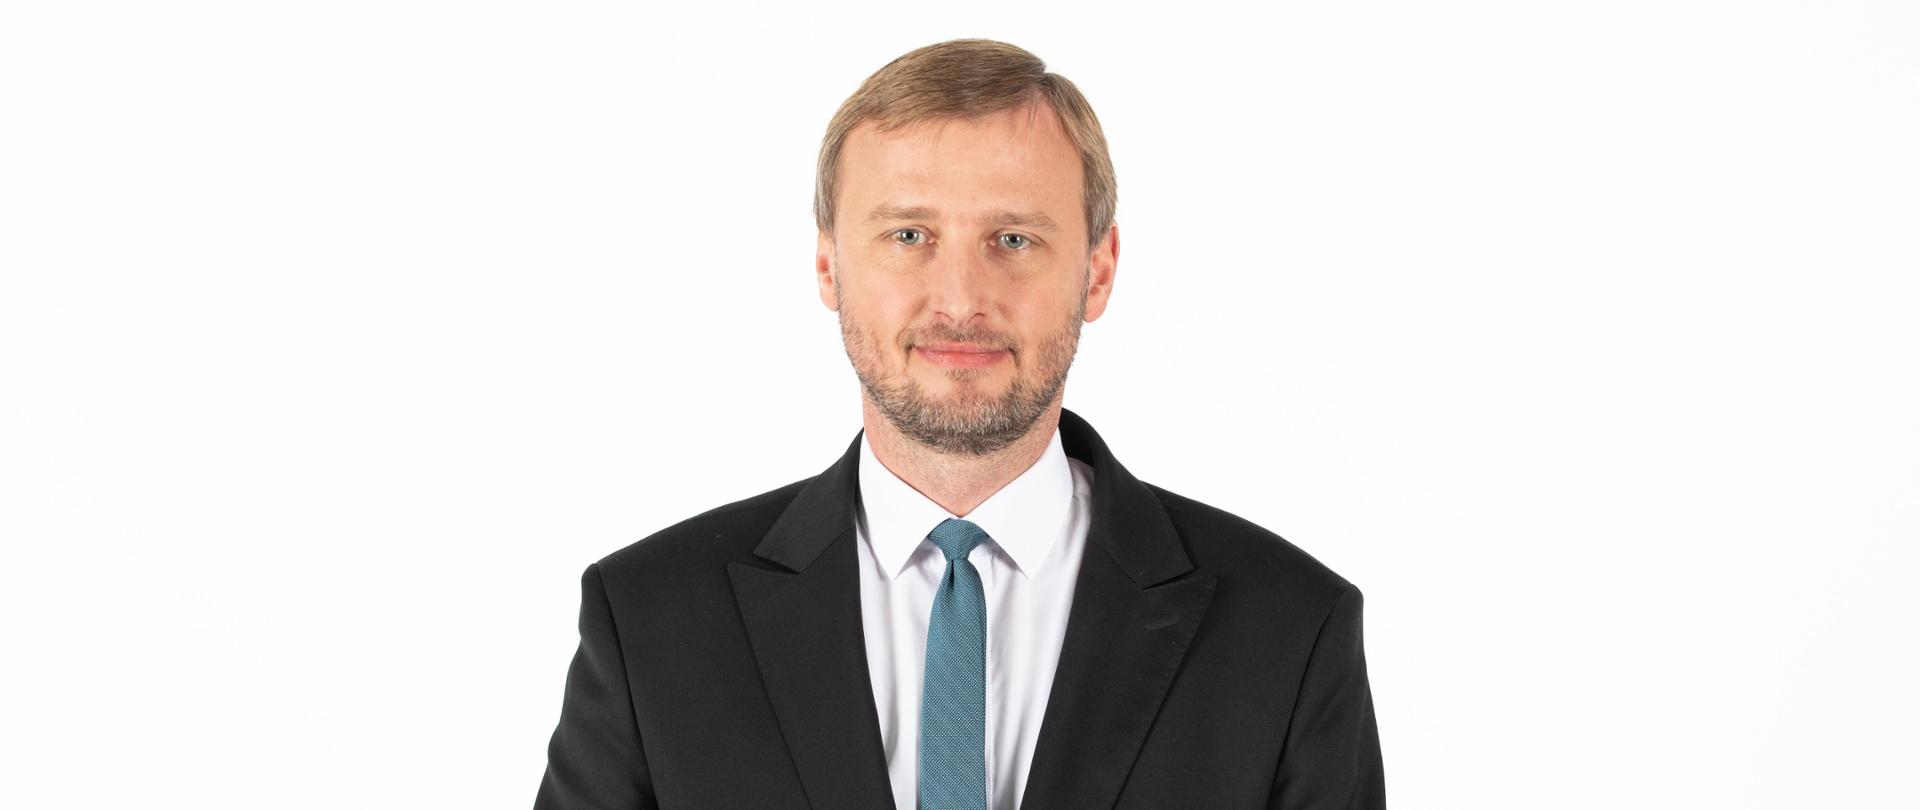 Maciej Karasiński
Dyrektor Generalny Służby Zagranicznej